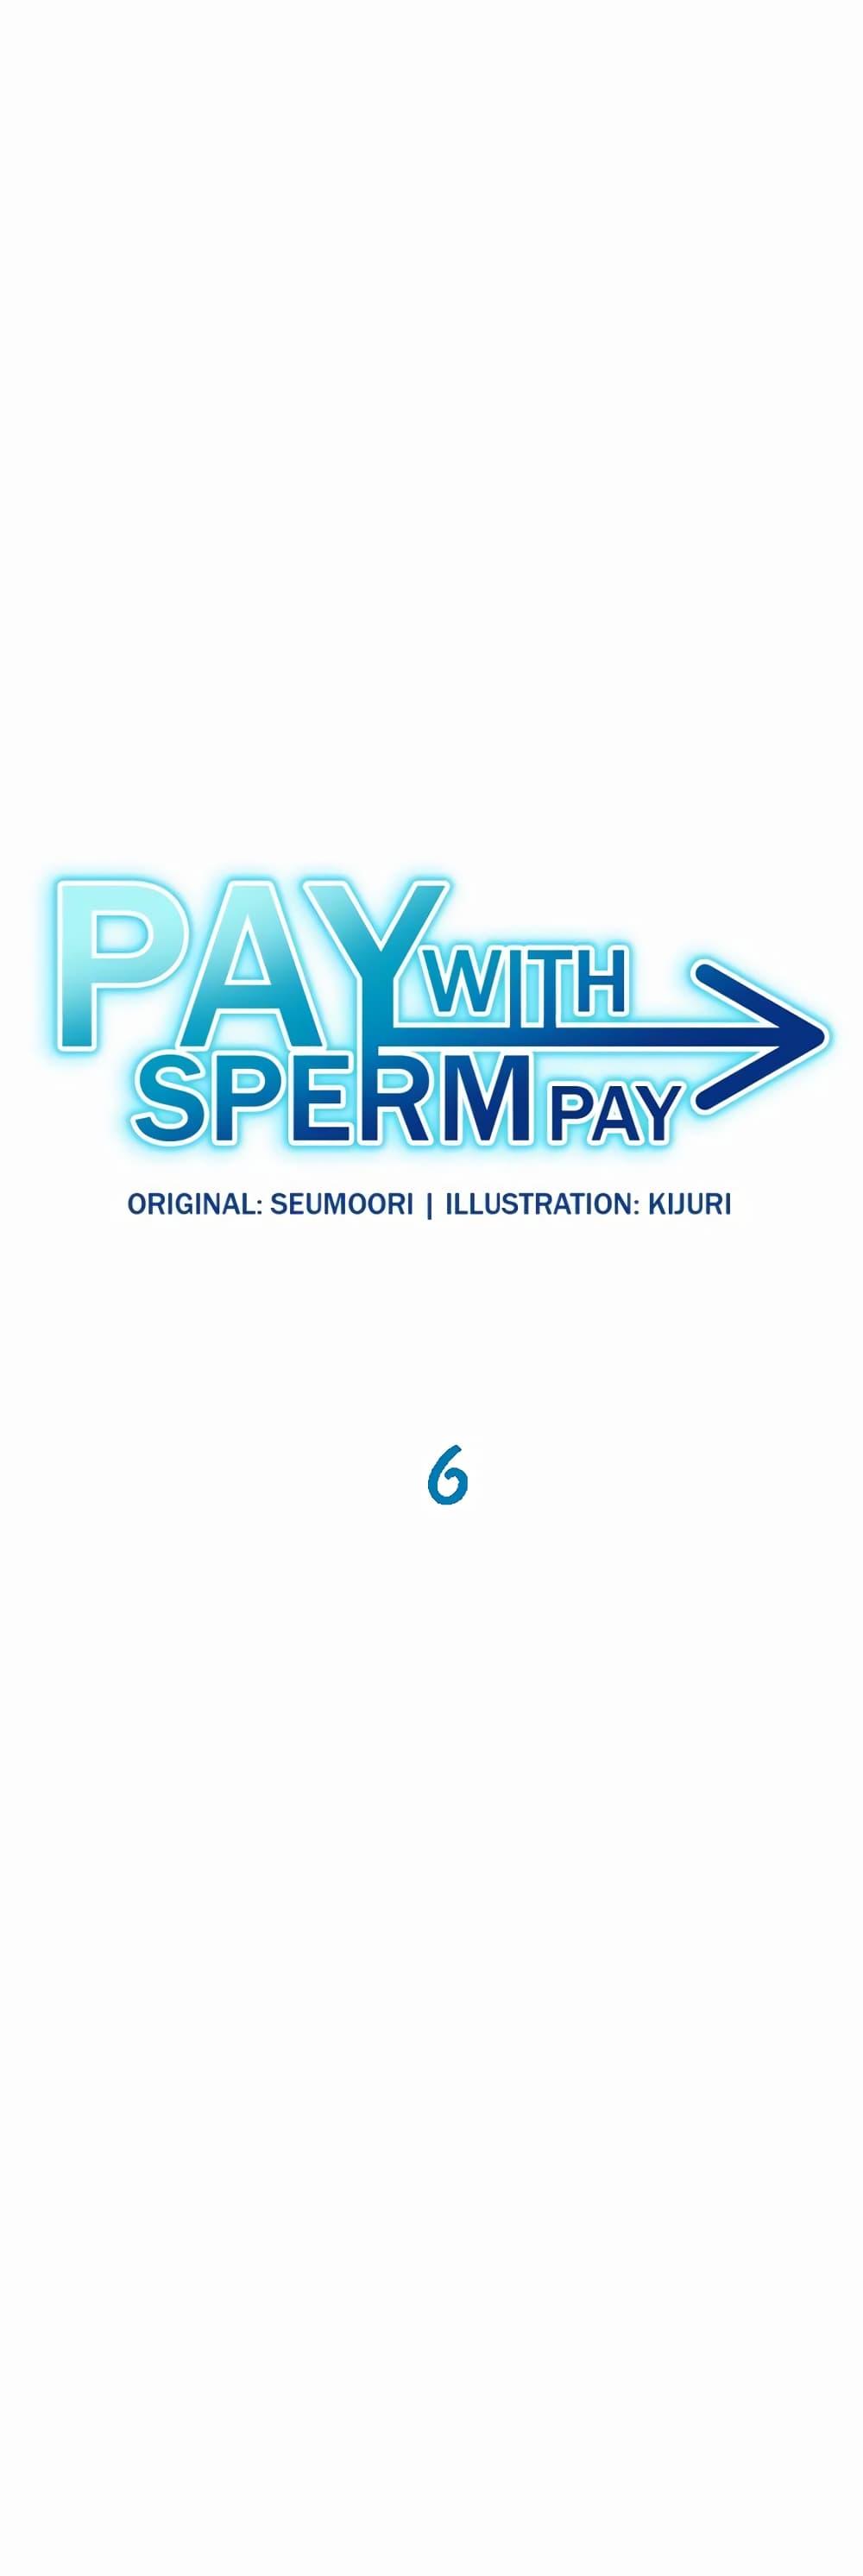 Doujin-Lc- อ่าน โดจิน มังฮวา เกาหลี ญี่ปุ่น จีน แปลไทย Pay with Sperm Pay ตอนที่ 1 2 3 4 5 6 7 8 9 10 11 12 13 14 ฟรี ไม่มีโฆษณา อ่าน โดจิน Manhwa เกาหลี ญี่ปุ่น จีน เรามีครบ คัดมาให้เน้นๆ โดจิน 18+ รับประกันความฟินโดย  Doujin Lc